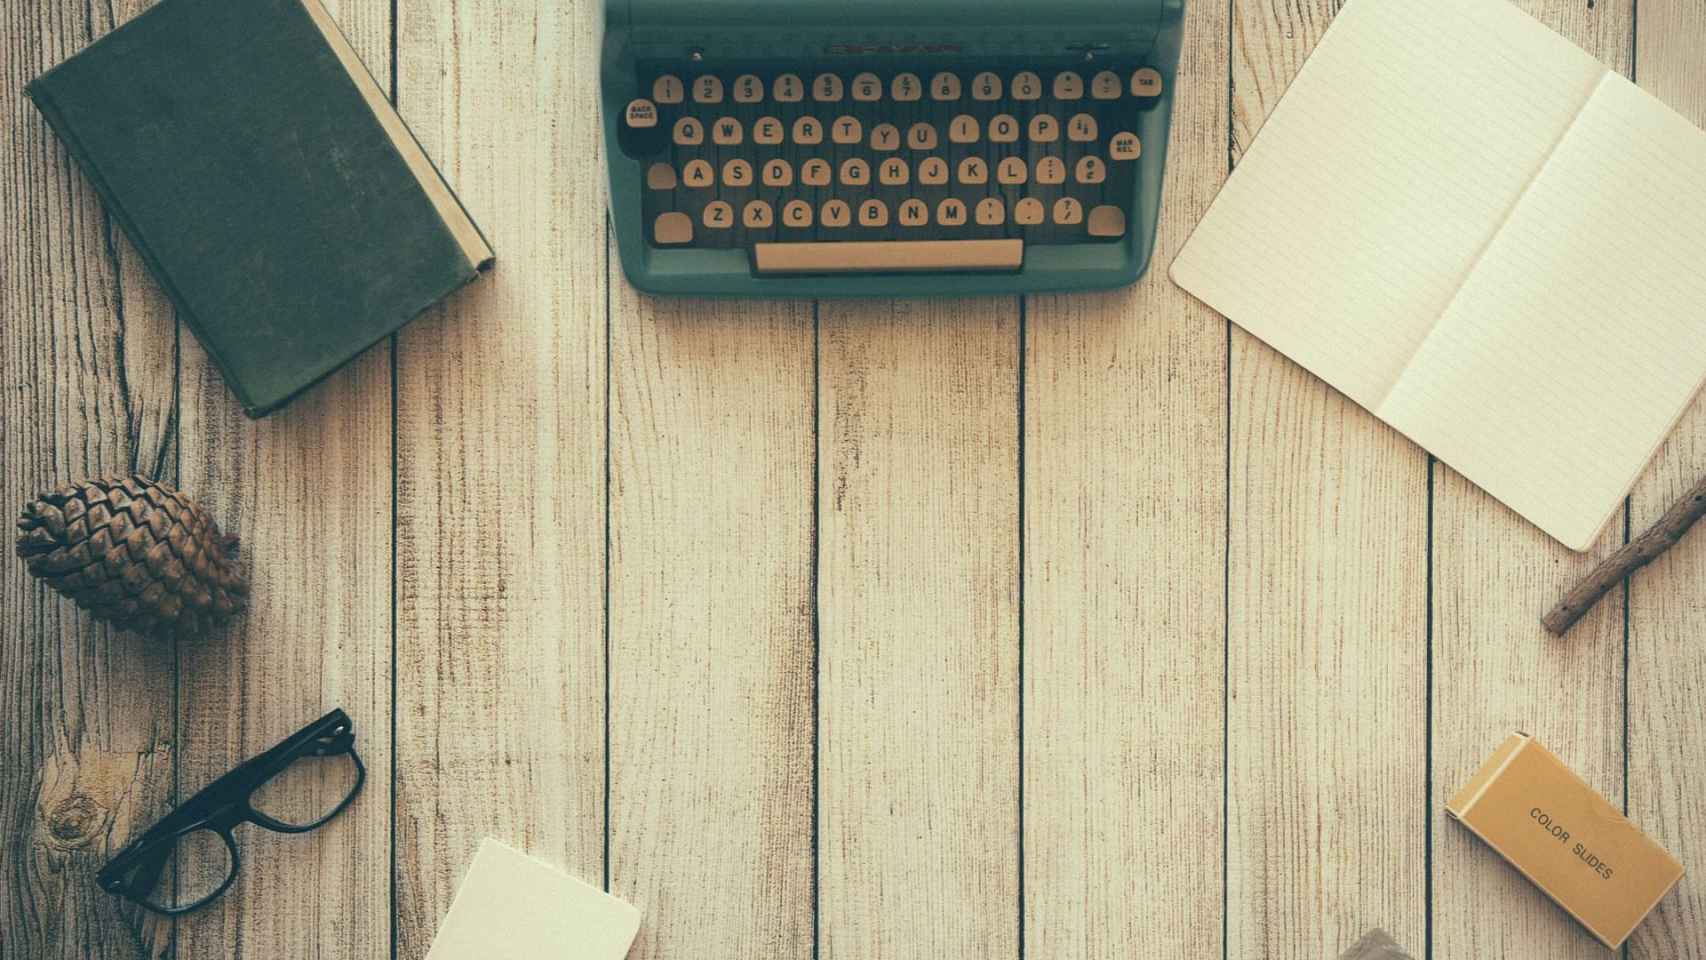 Una máquina de escribir / PIXABAY